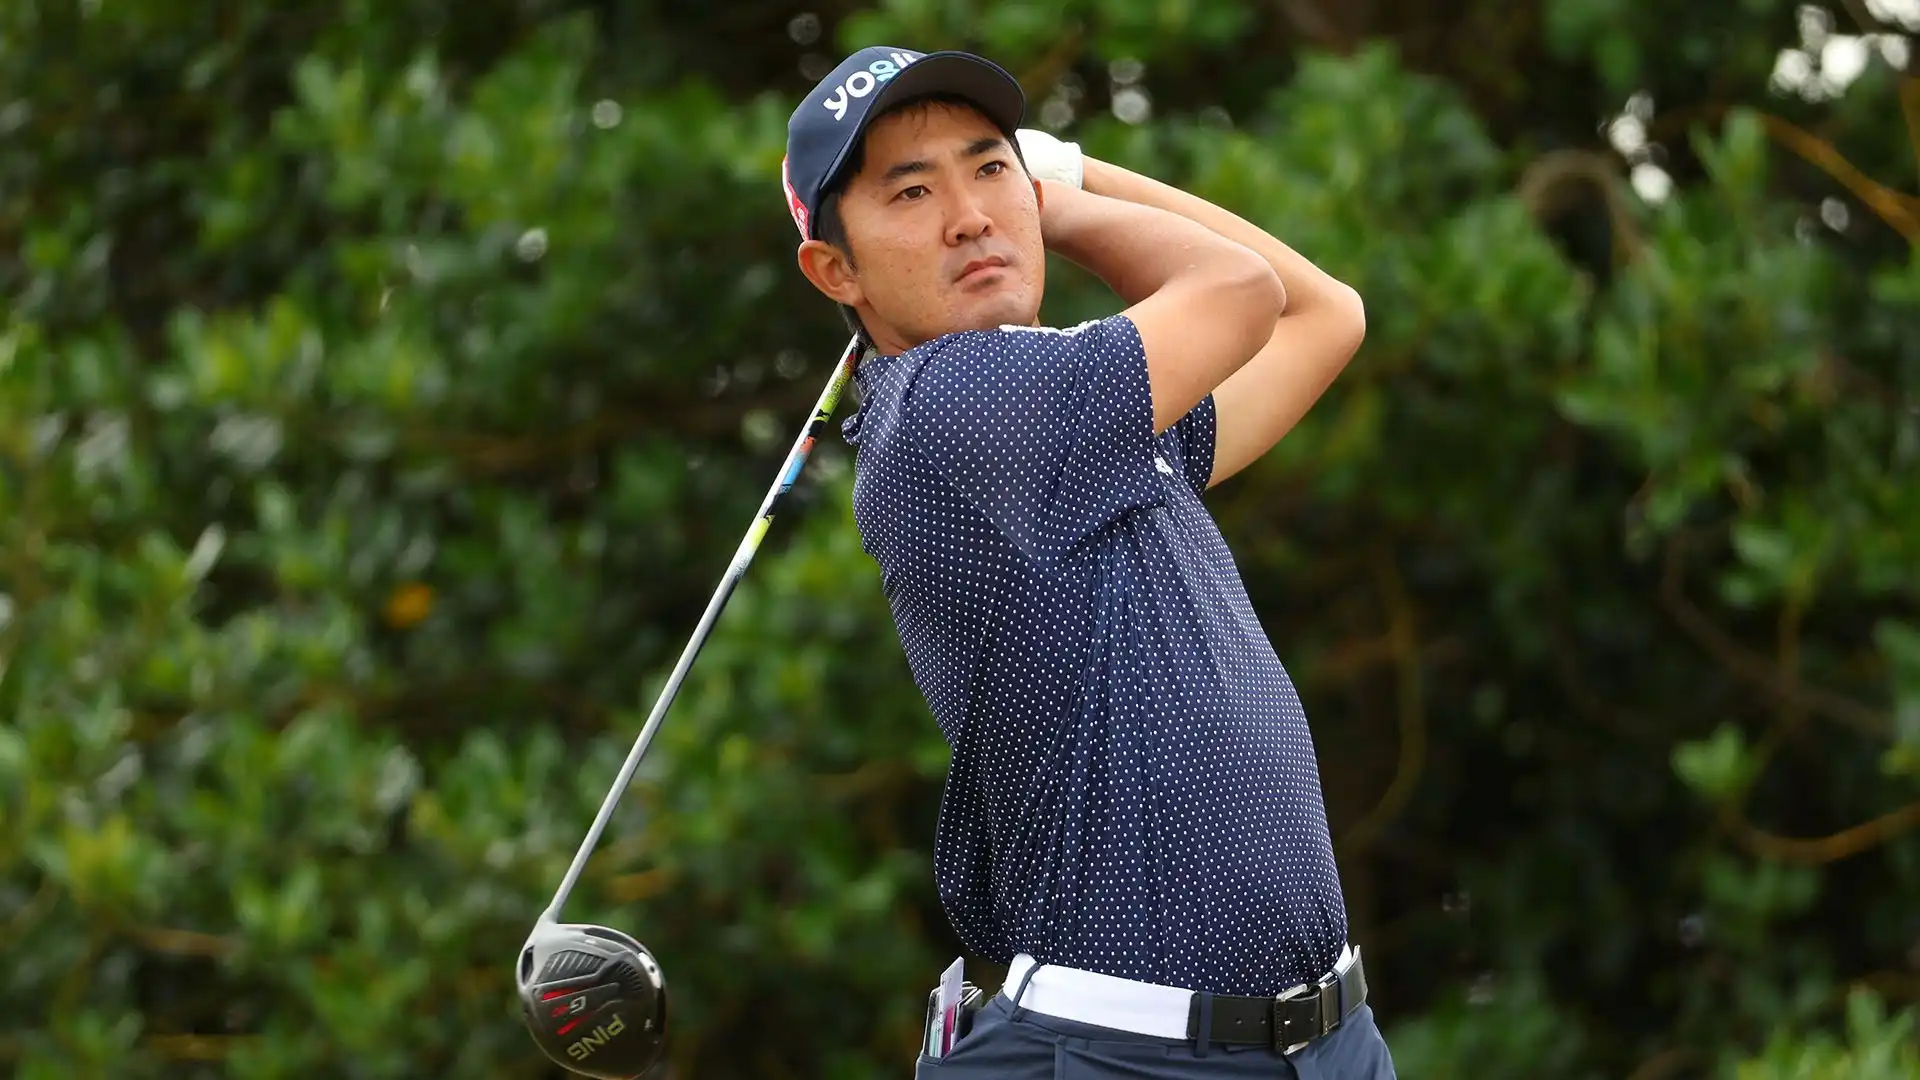 Takumi Kanaya: premi vinti nel PGA Tour $354,956. Per oltre un anno miglior golfista dilettante del mondo, ha vinto 7 tornei in carriera